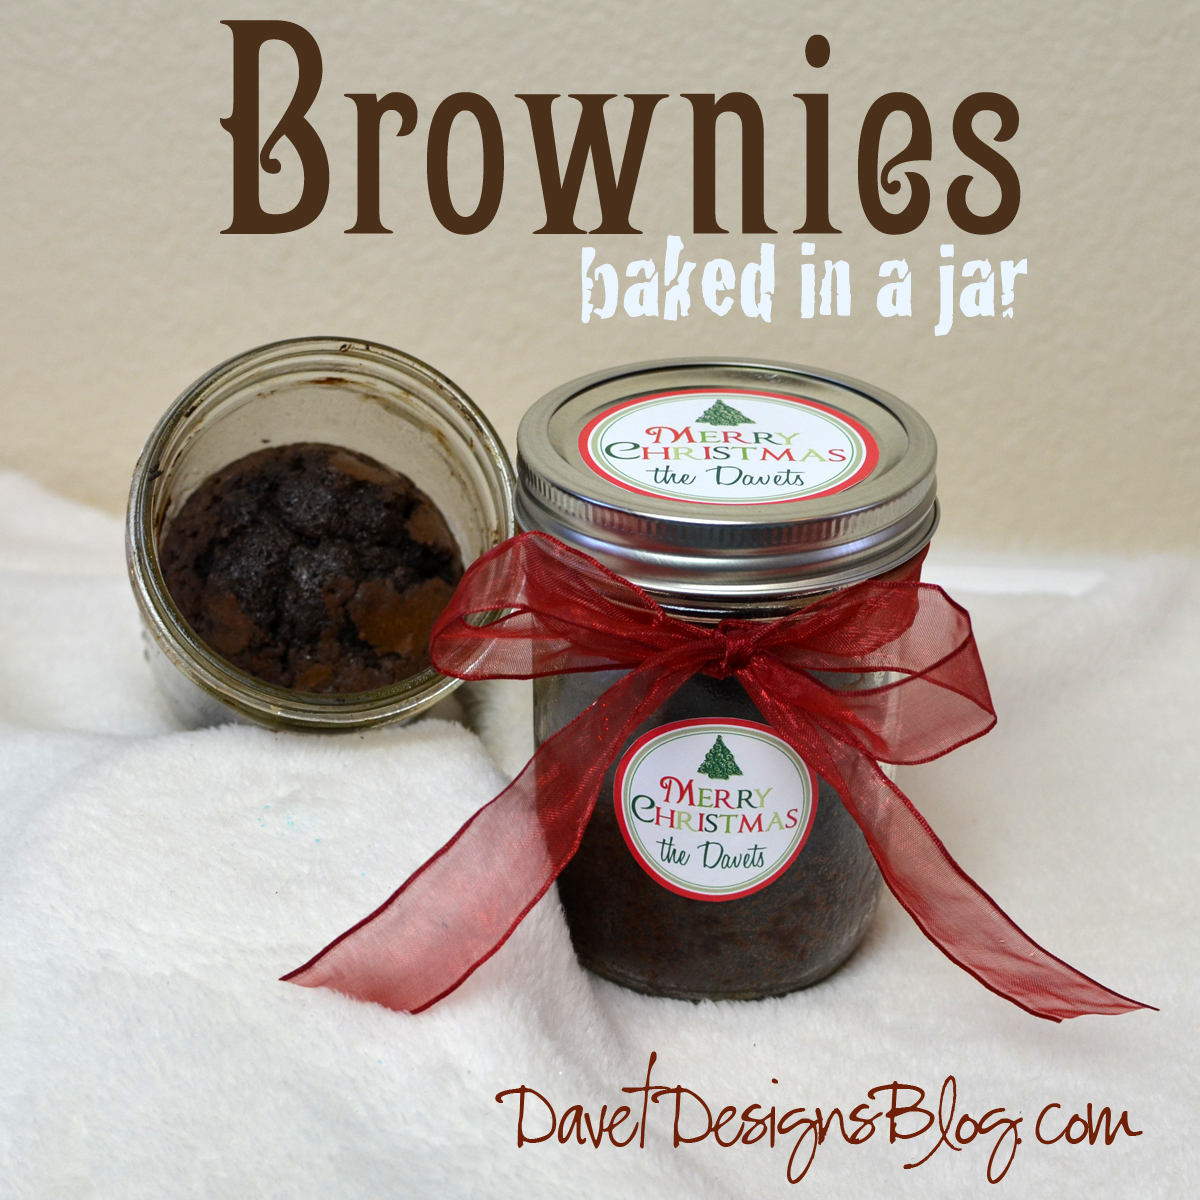 Brownies Baked in a Jar